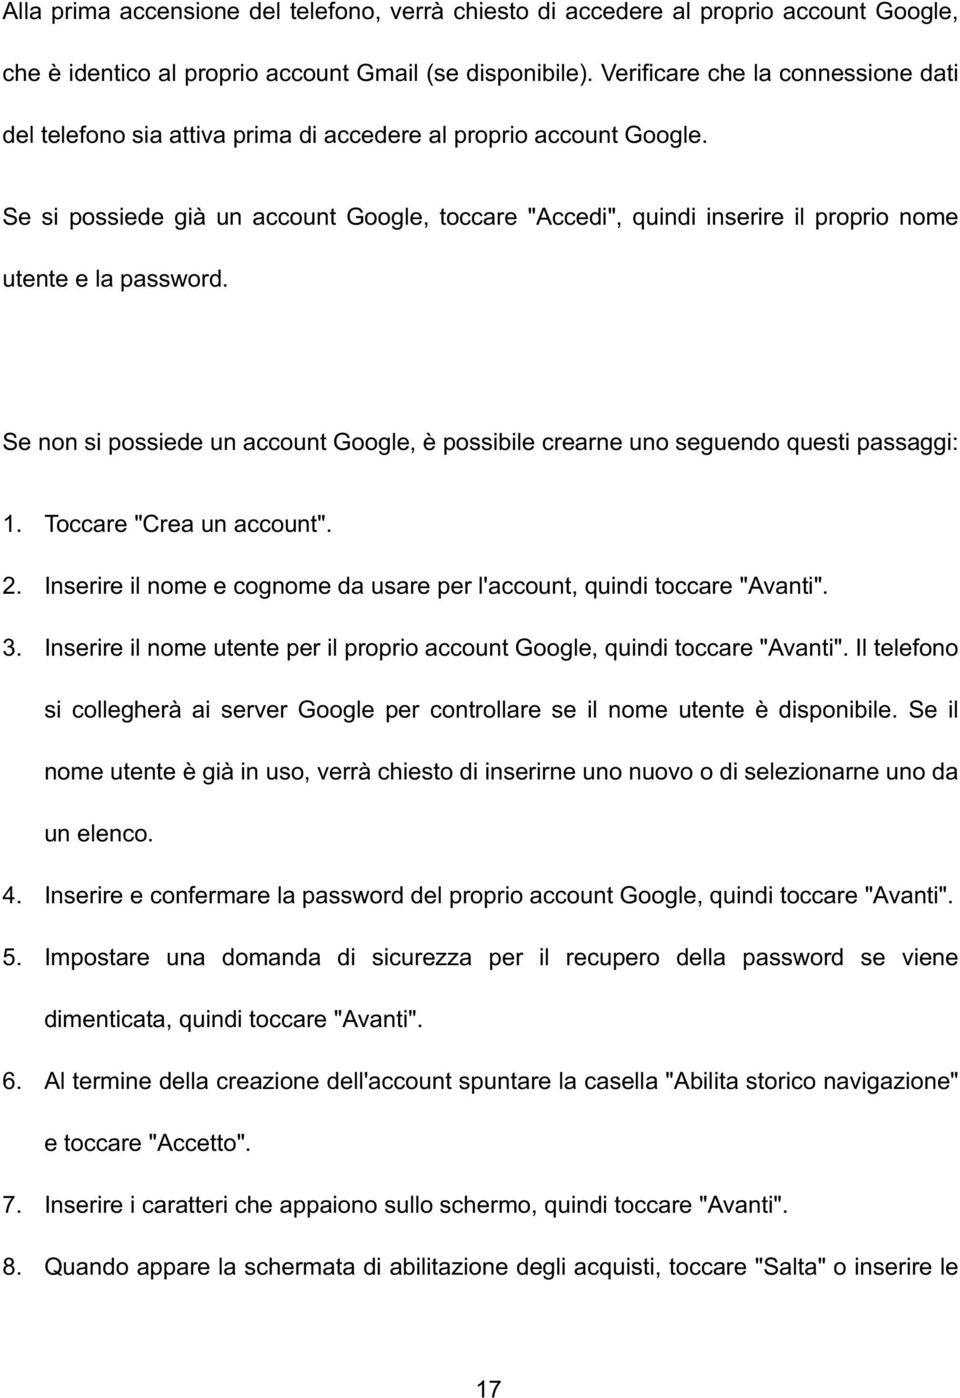 Se si possiede già un account Google, toccare "Accedi", quindi inserire il proprio nome utente e la password. Se non si possiede un account Google, è possibile crearne uno seguendo questi passaggi: 1.